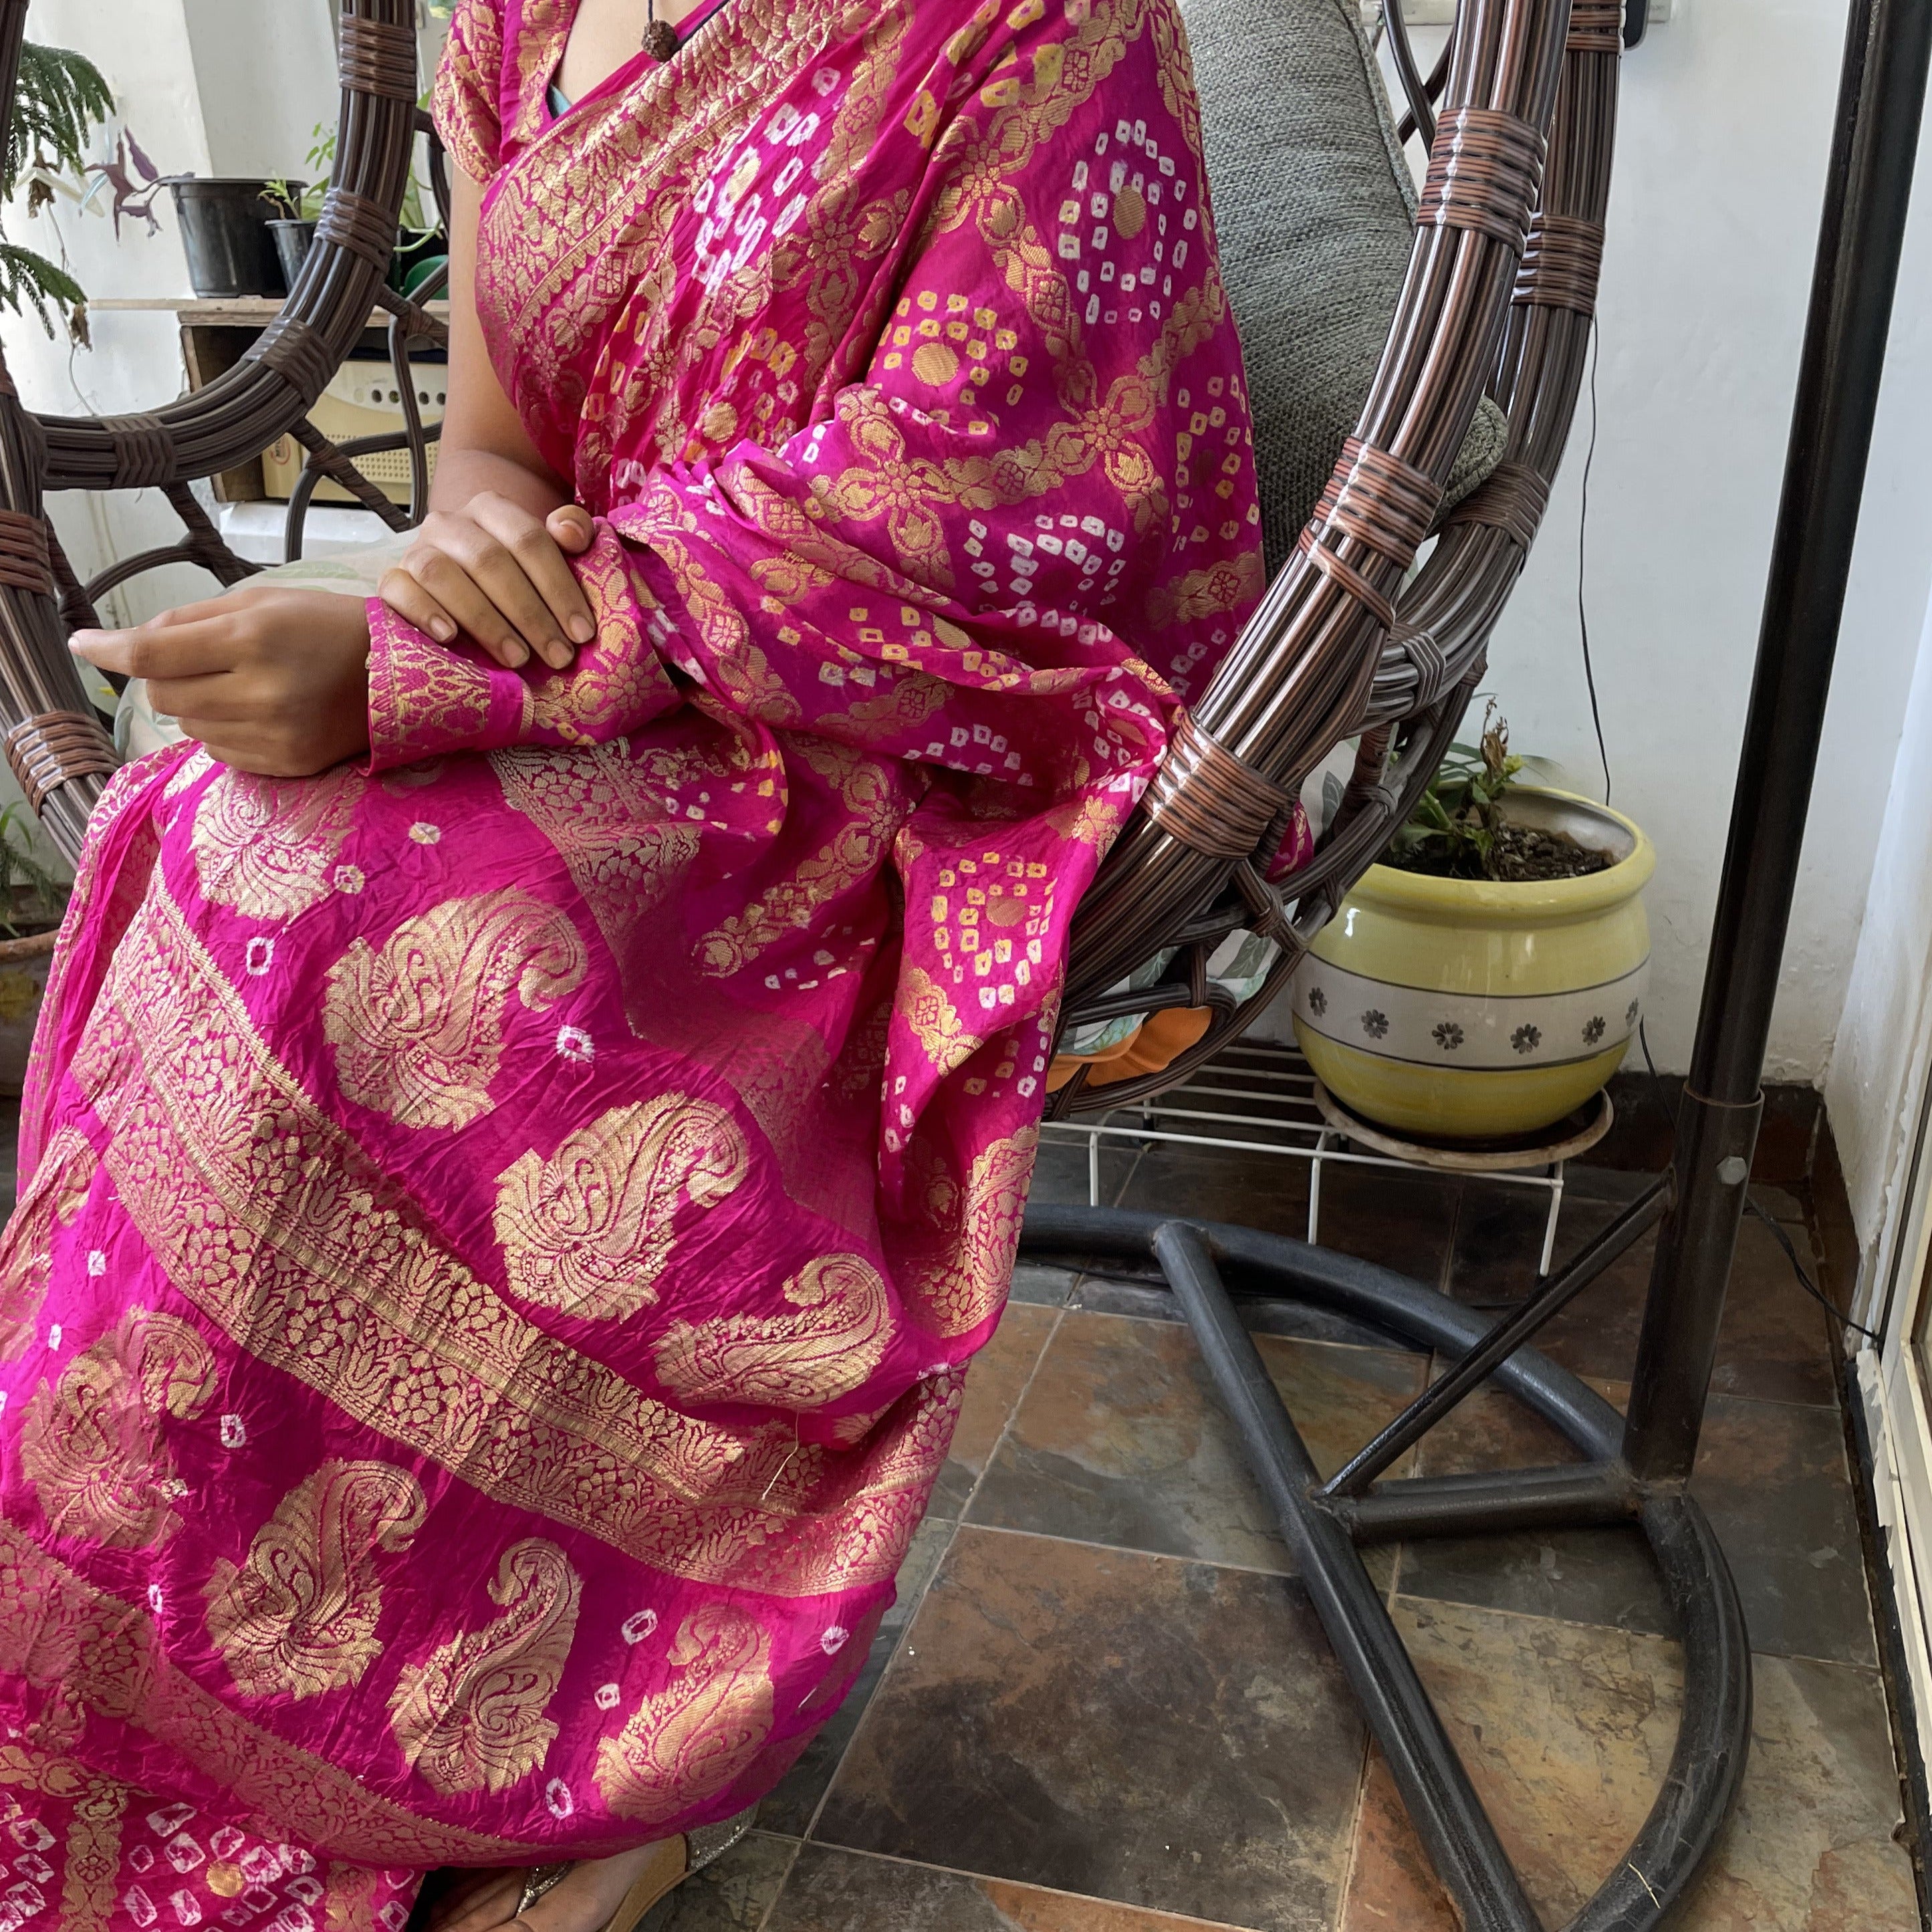 Buy Beautiful Orange Color Rajasthani Traditional Hand Bandhej Saree With  Blouse Fabric for Women,jaipuri Bandhej Bandhani Silk Saree Online in India  - Etsy